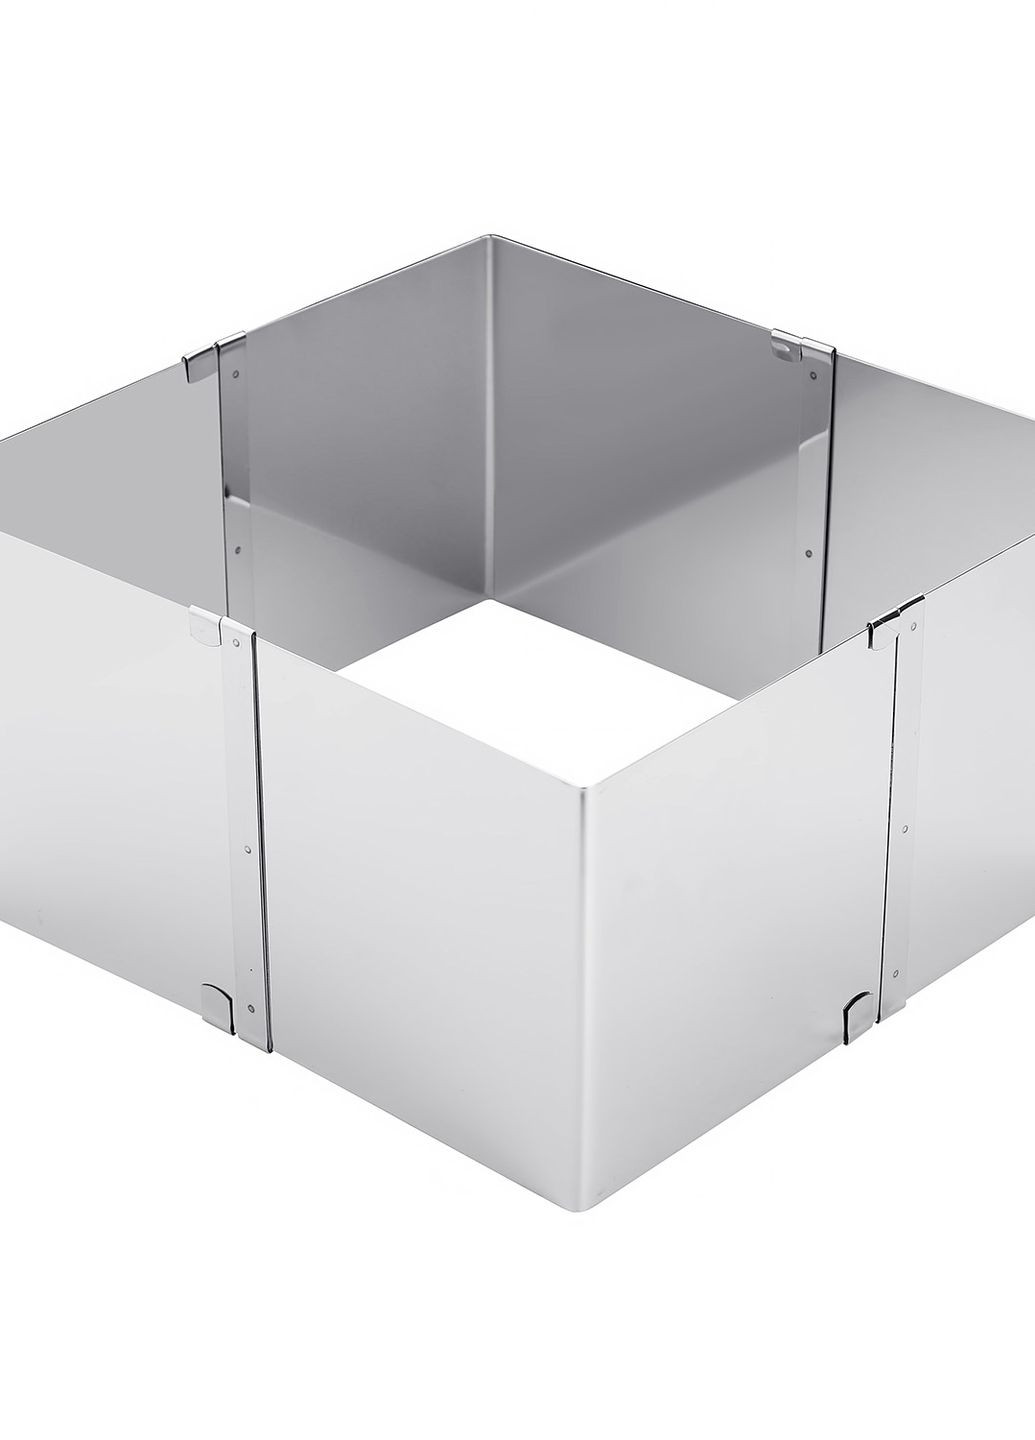 Раздвижная квадратная форма для выпечки и сборки салатов и тортов (квадрат для торта) 15-28 см висота стенок 10 см Master Class (273394041)